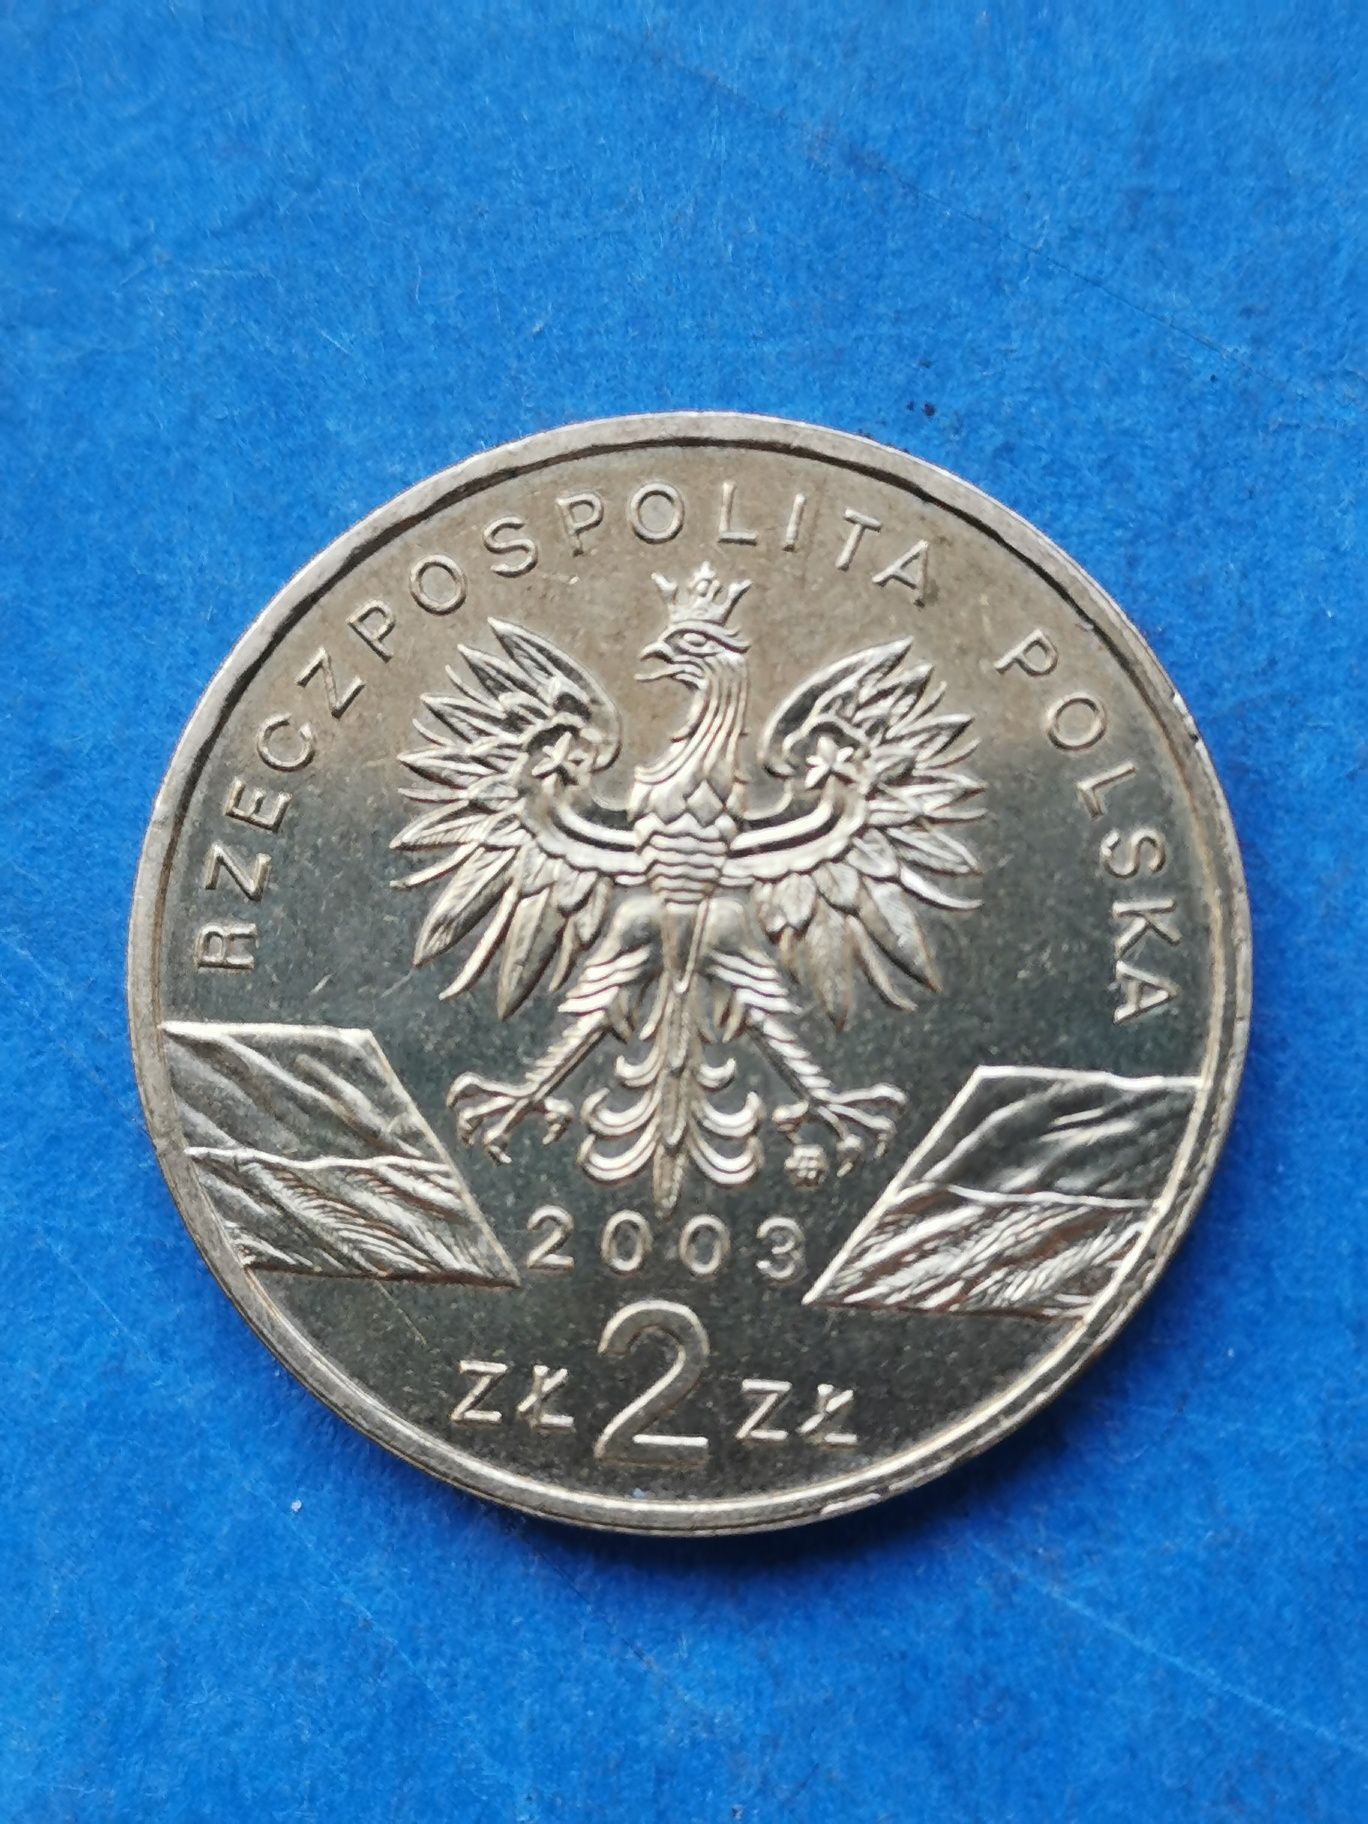 2 złote "Solidarność" 2000r.